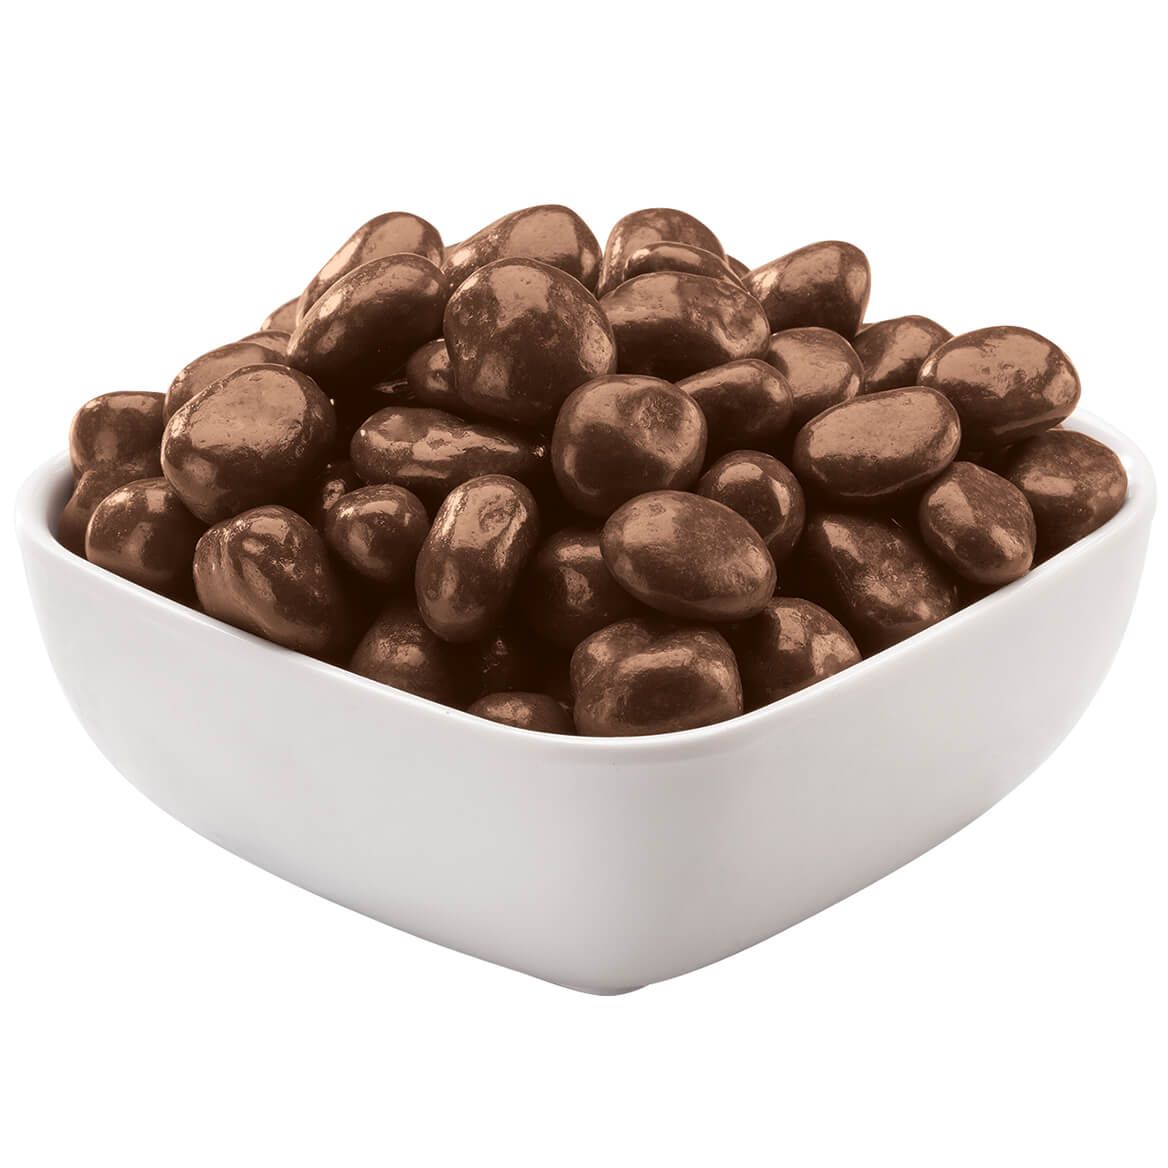 Mrs. Kimball's Chocolate Covered Raisins + '-' + 374439